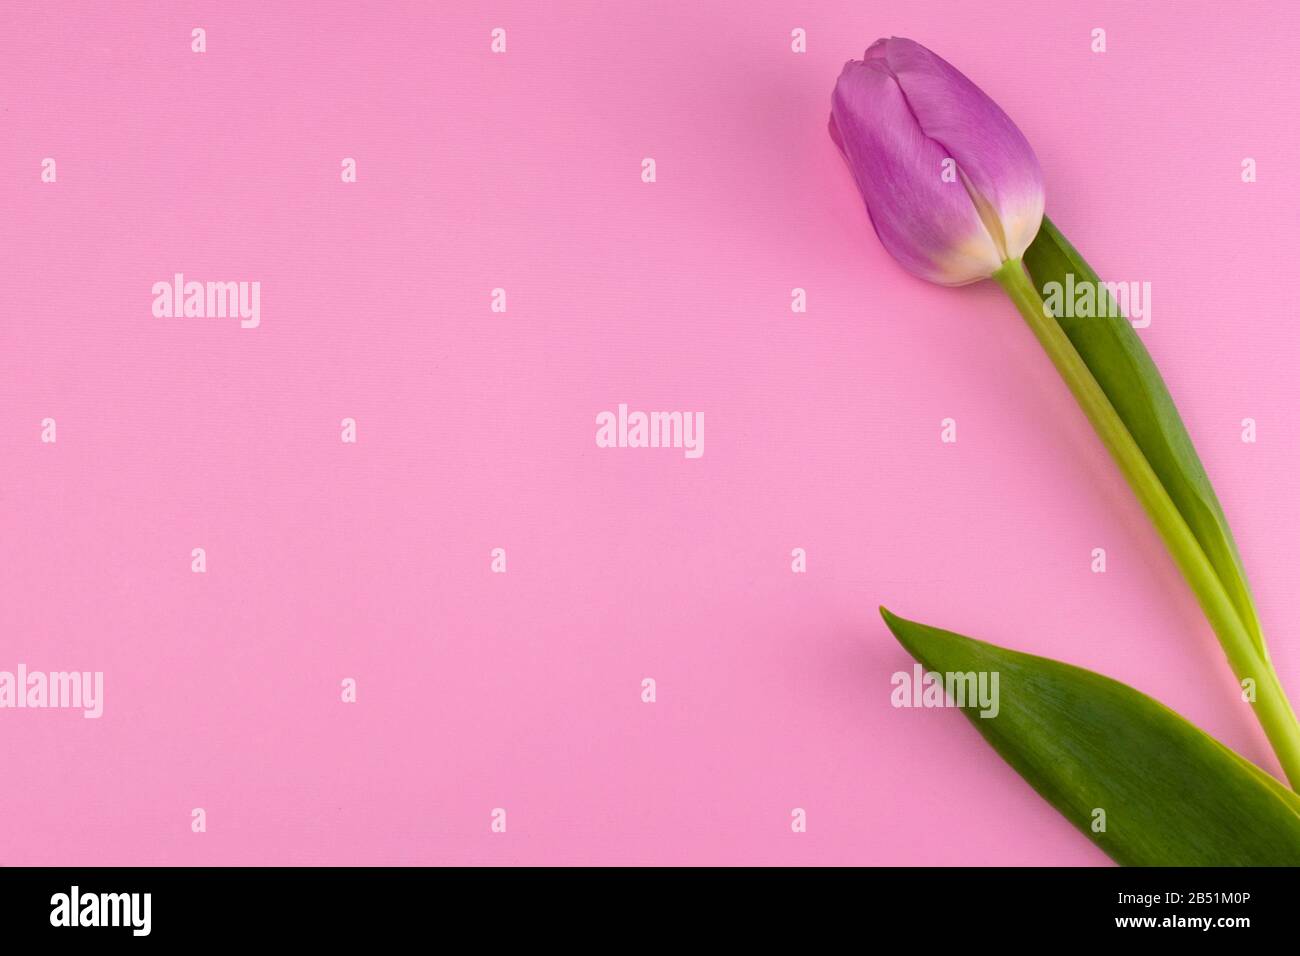 Eine rosafarbene Tulpe auf einem sanft rosafarbenen Hintergrund. Kopierbereich. Stockfoto